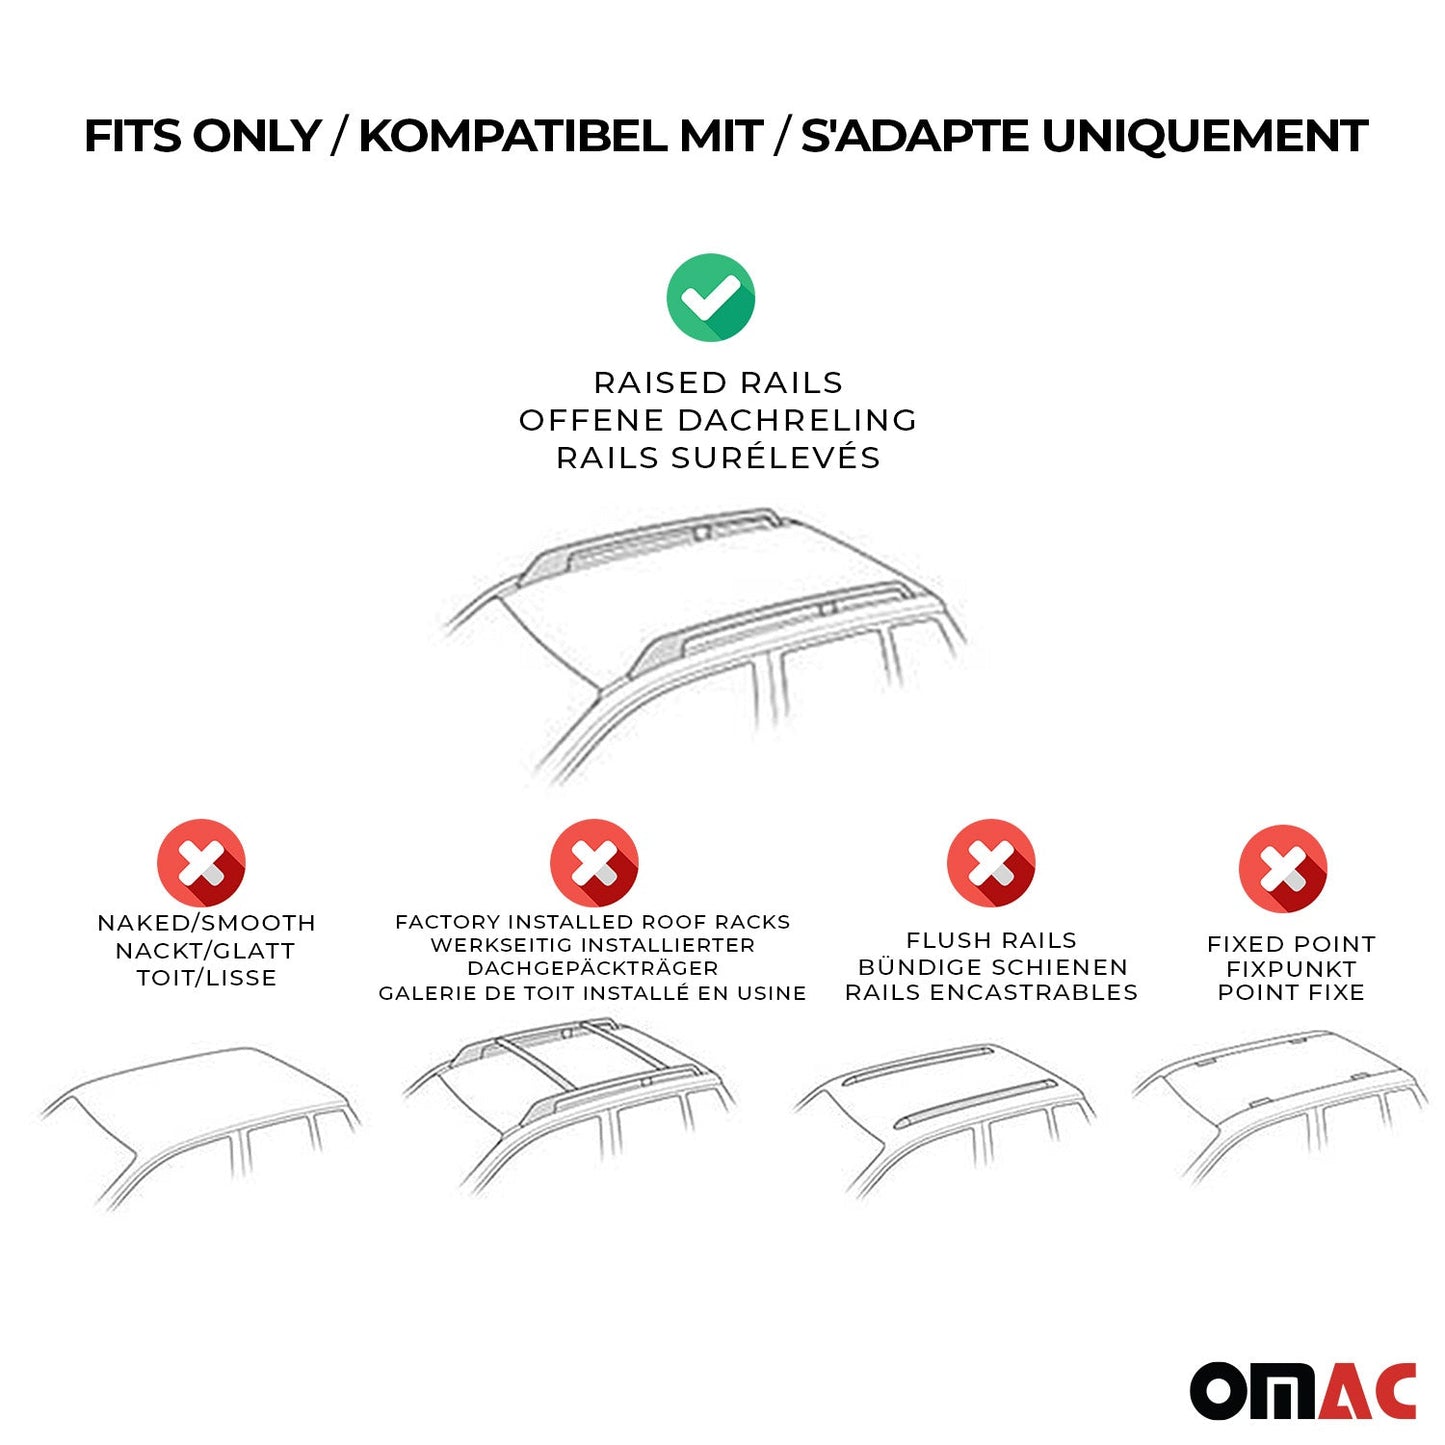 OMAC Roof Rack Cross Bars Lockable for Fiat Panda Cross 2015-2022 Aluminium Silver 2x U003886